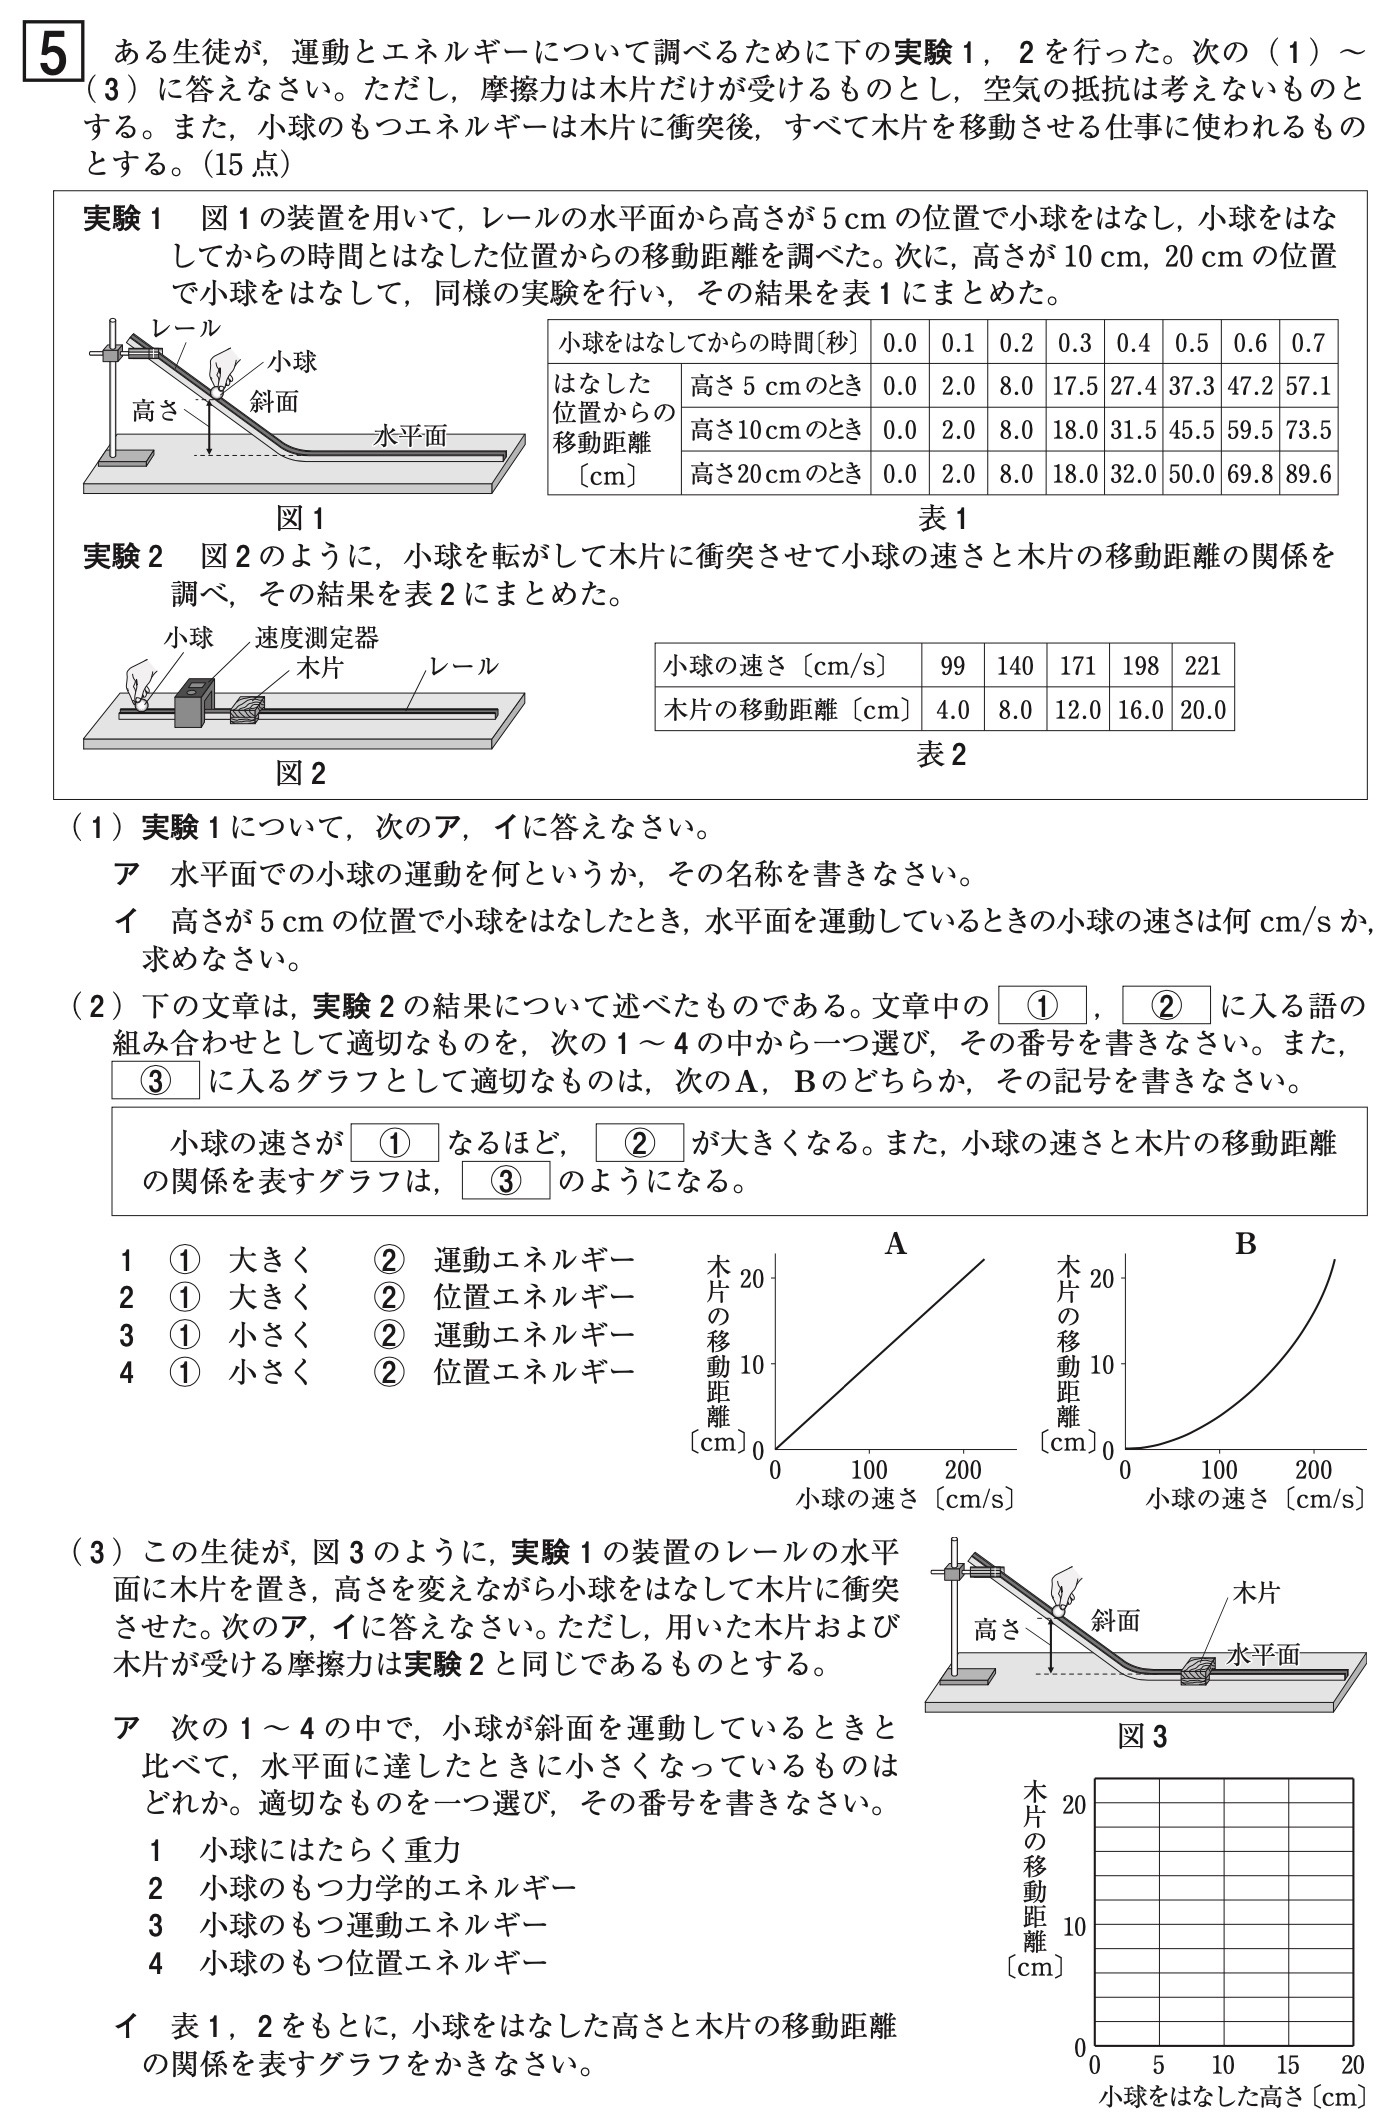 青森県公立高校入試理科2022年(令和4年)過去問題